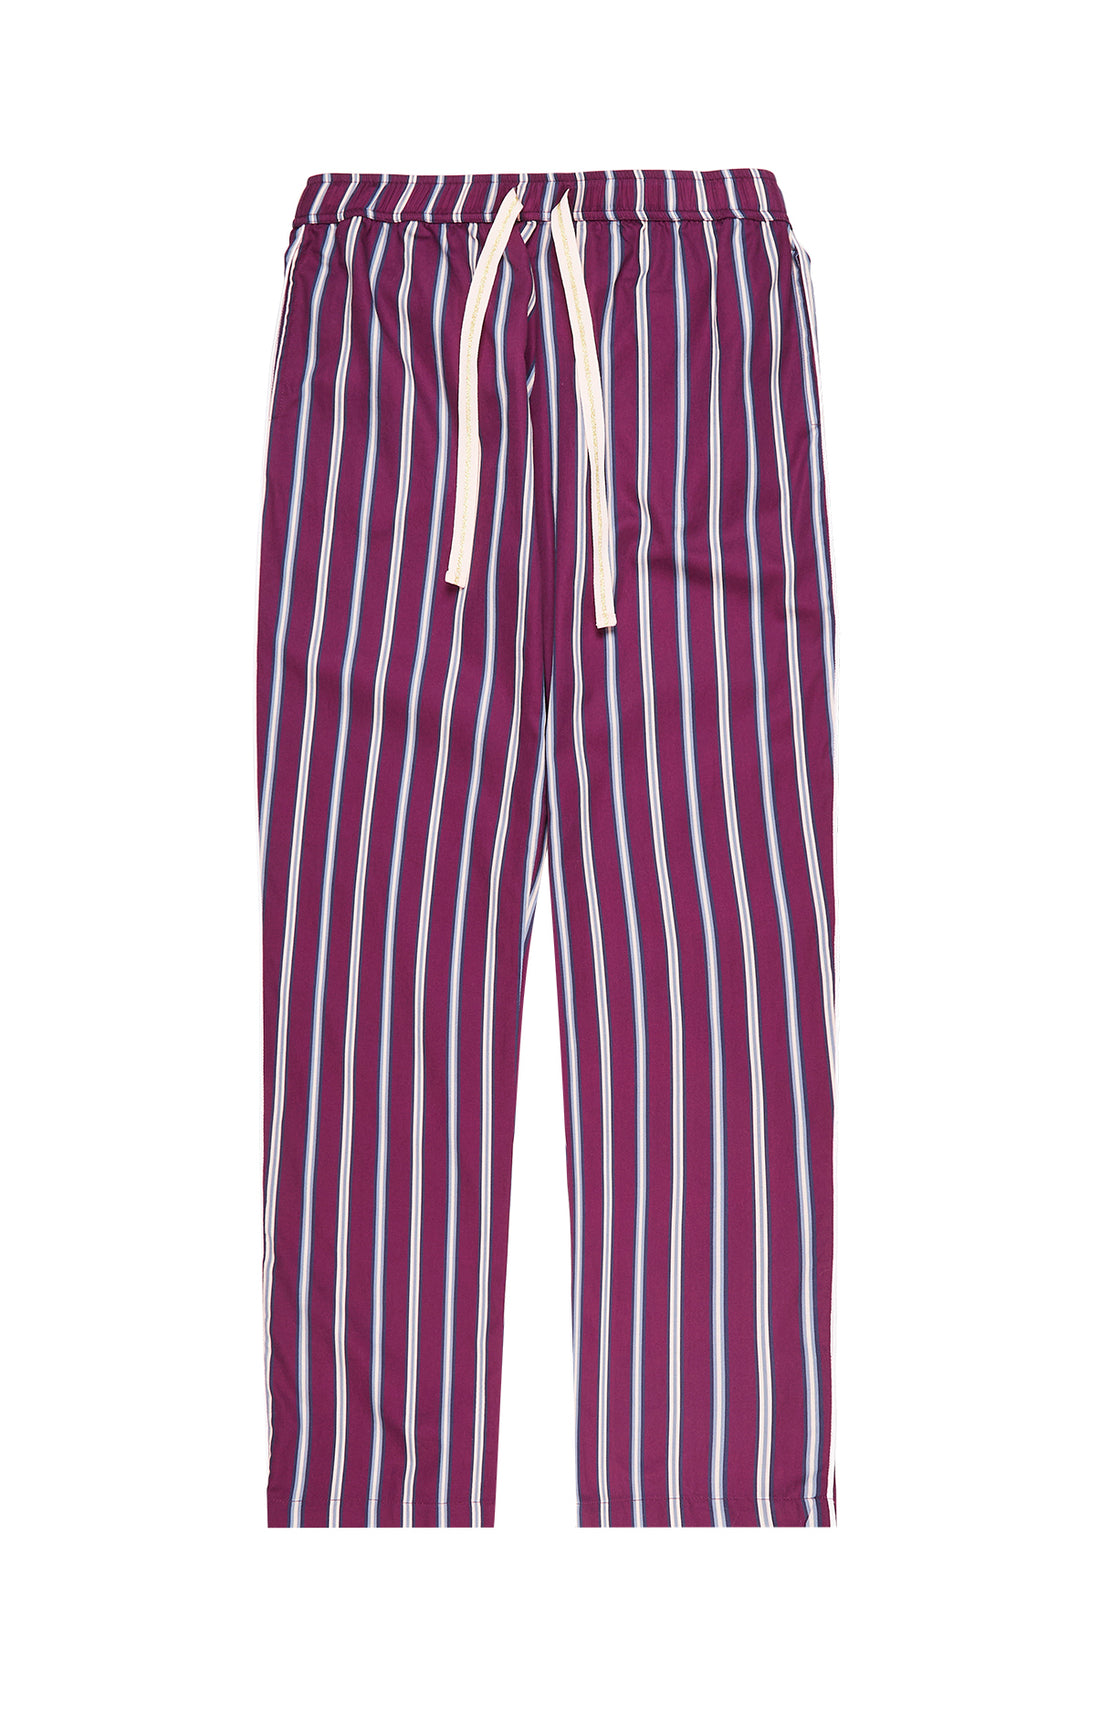 Striped Pants - Iris